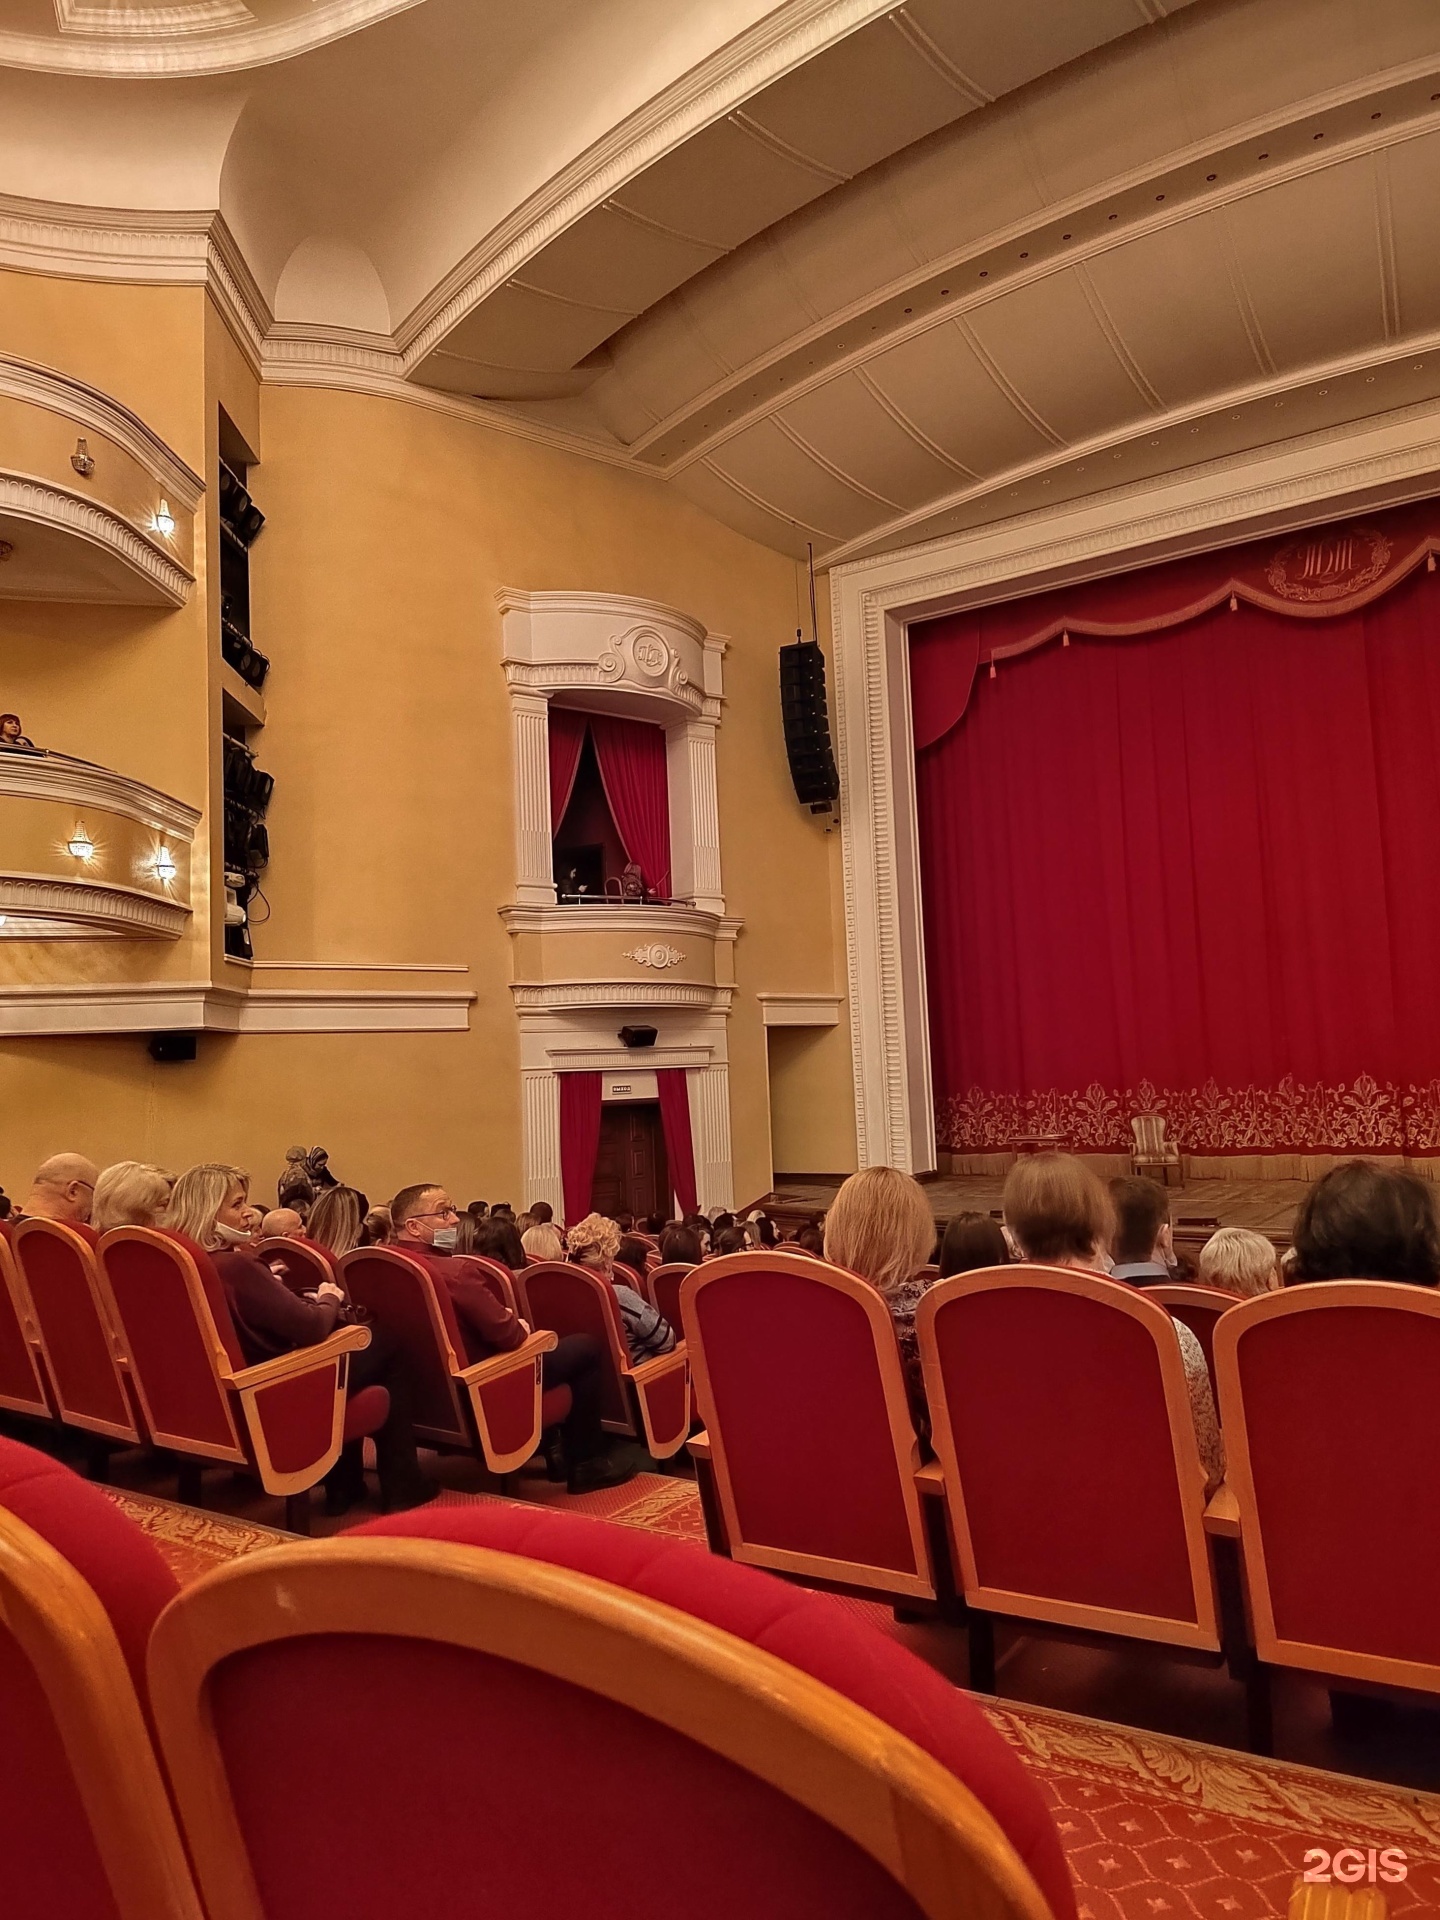 Пензенский театр луначарского